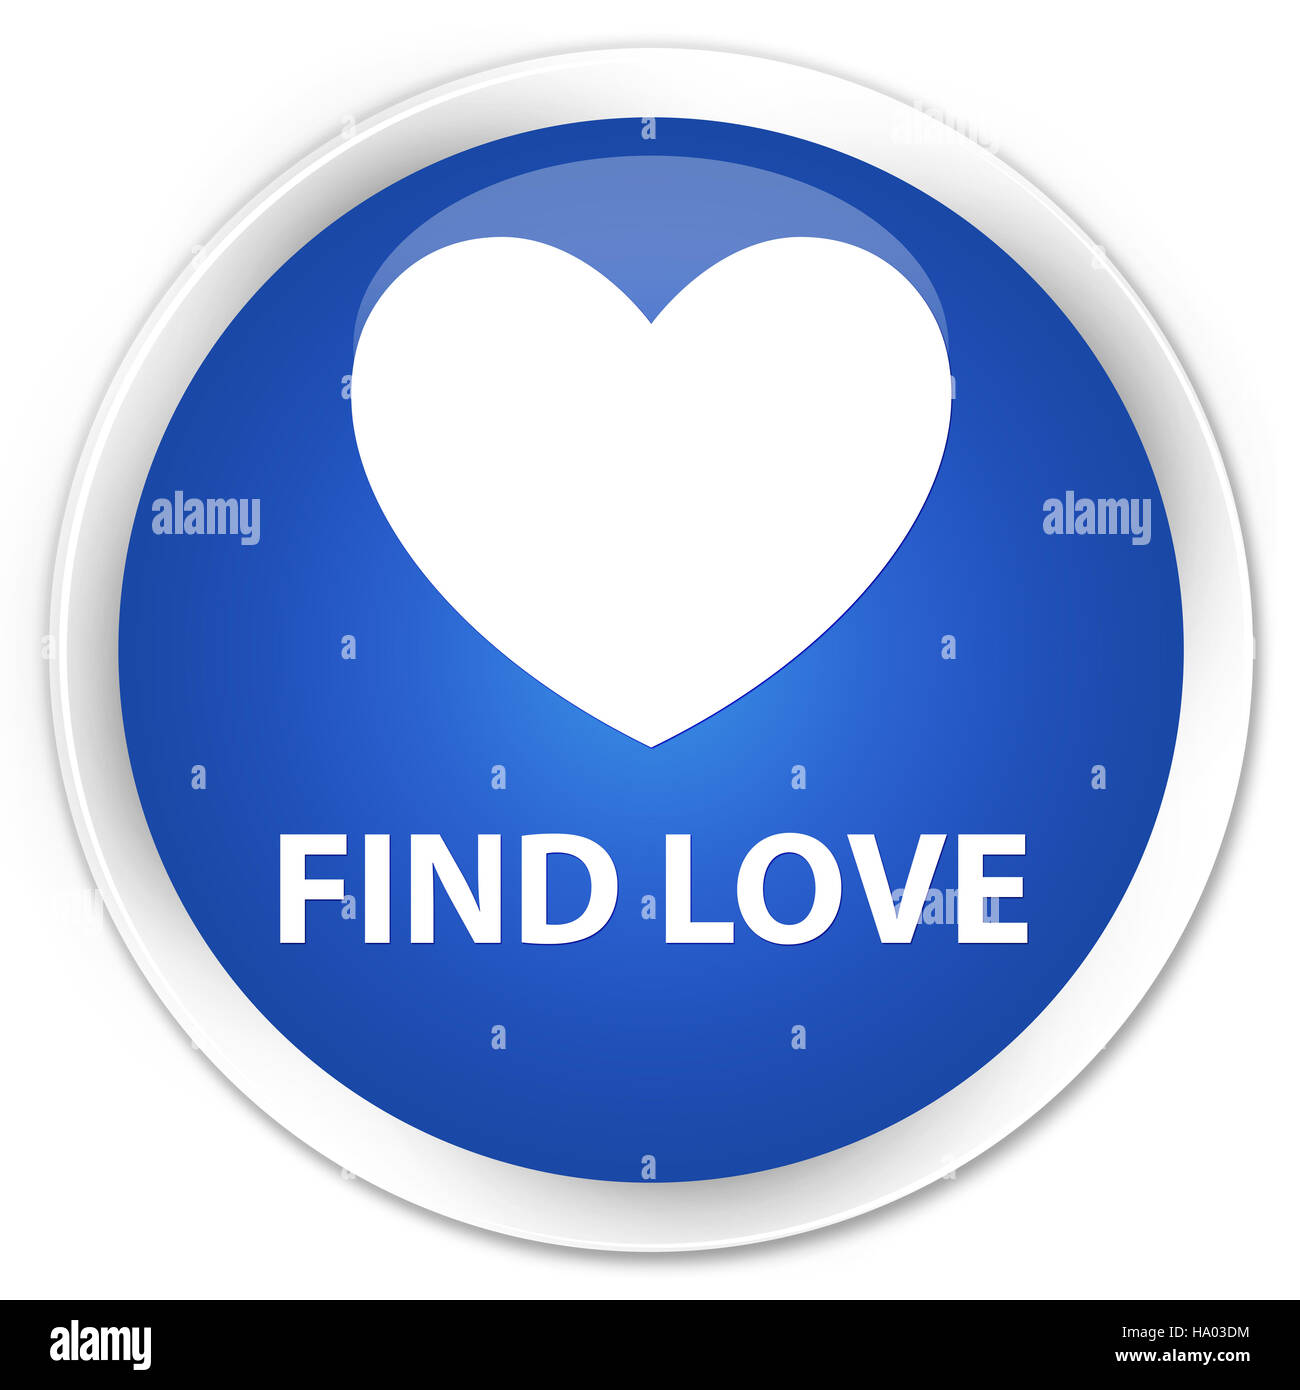 Finden Sie Liebe isoliert auf Premium-Runde blaue abstrakte Abbildung Stockfoto